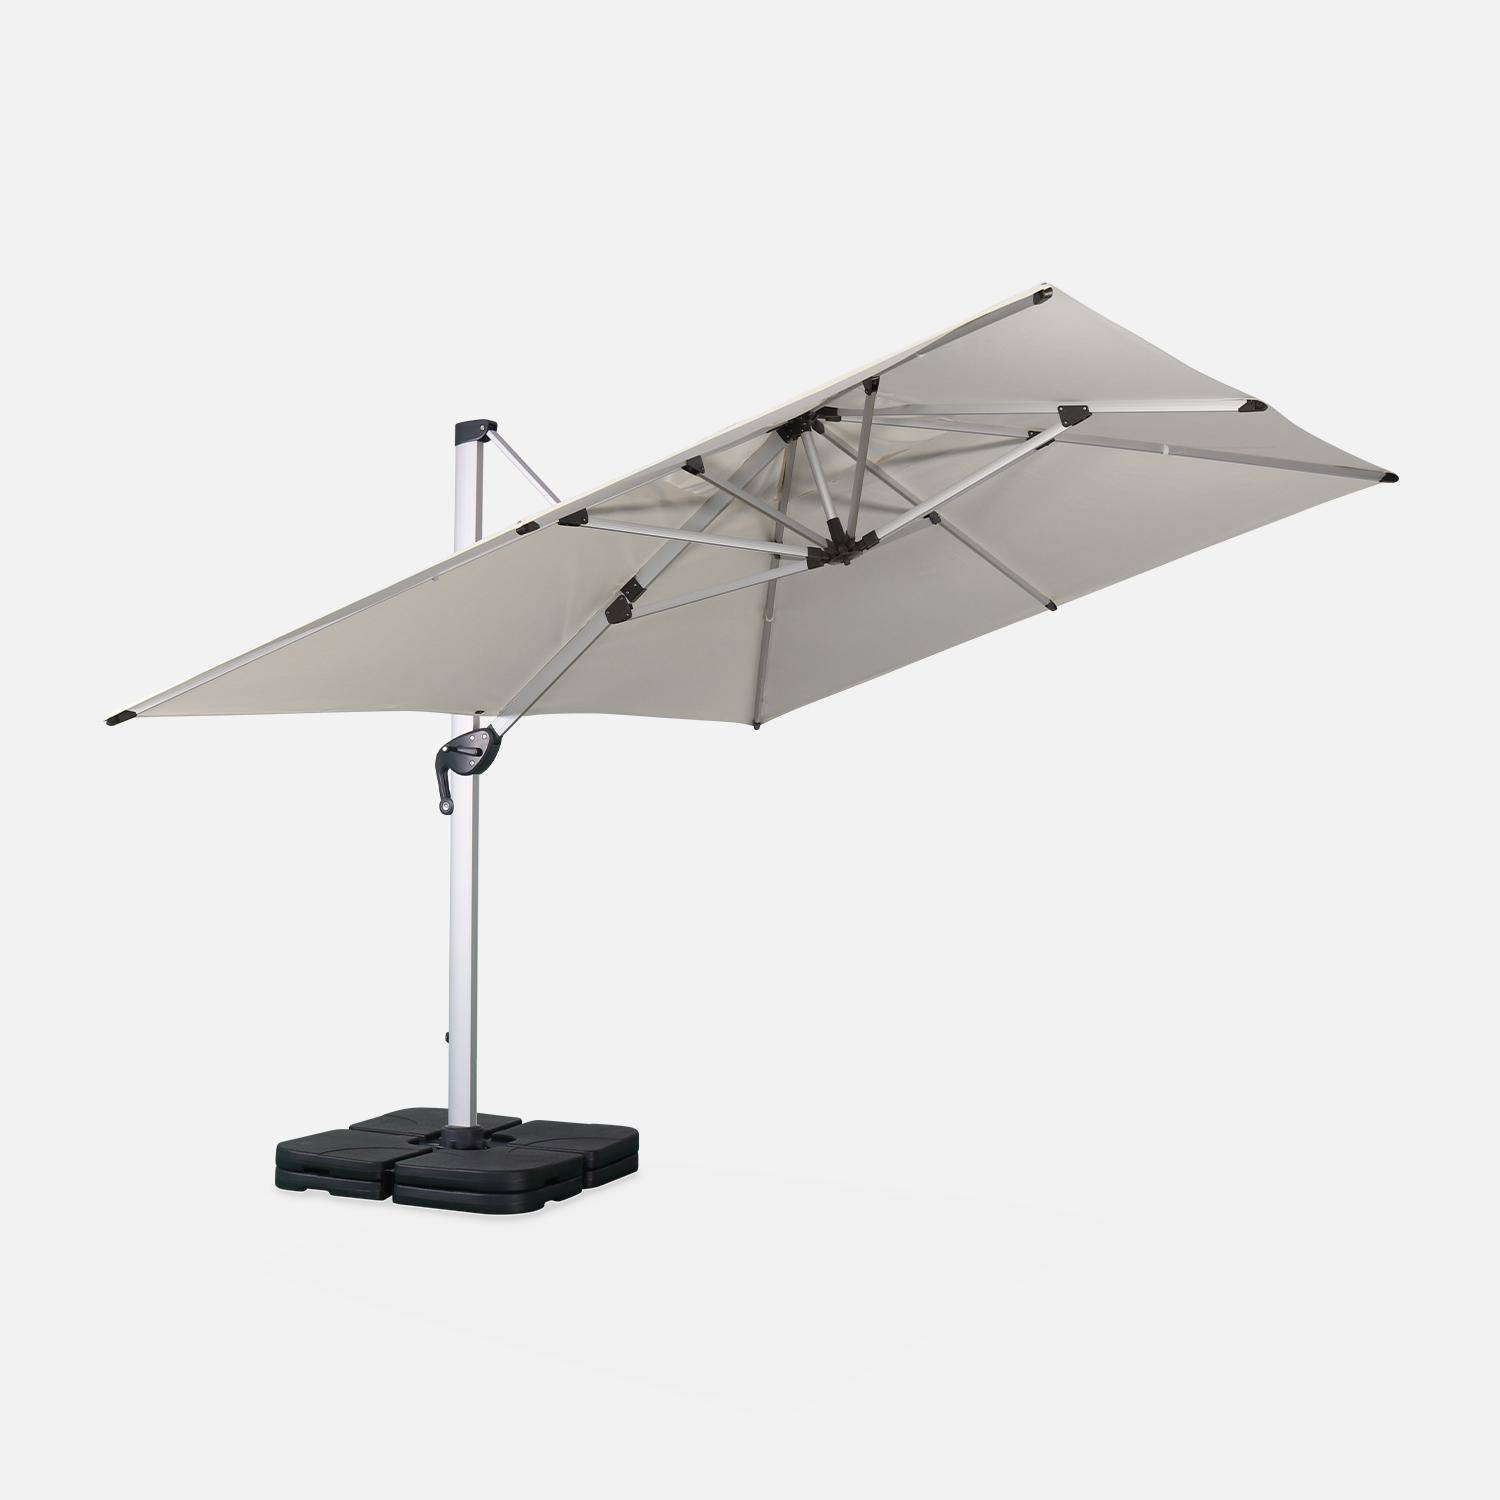 Parasol déporté haut de gamme carré 4x4m – PYLA Beige – Toile Sunbrella ® fabriquée en France, par Dickson, structure en aluminium anodisé, rotatif, housse de protection Photo3